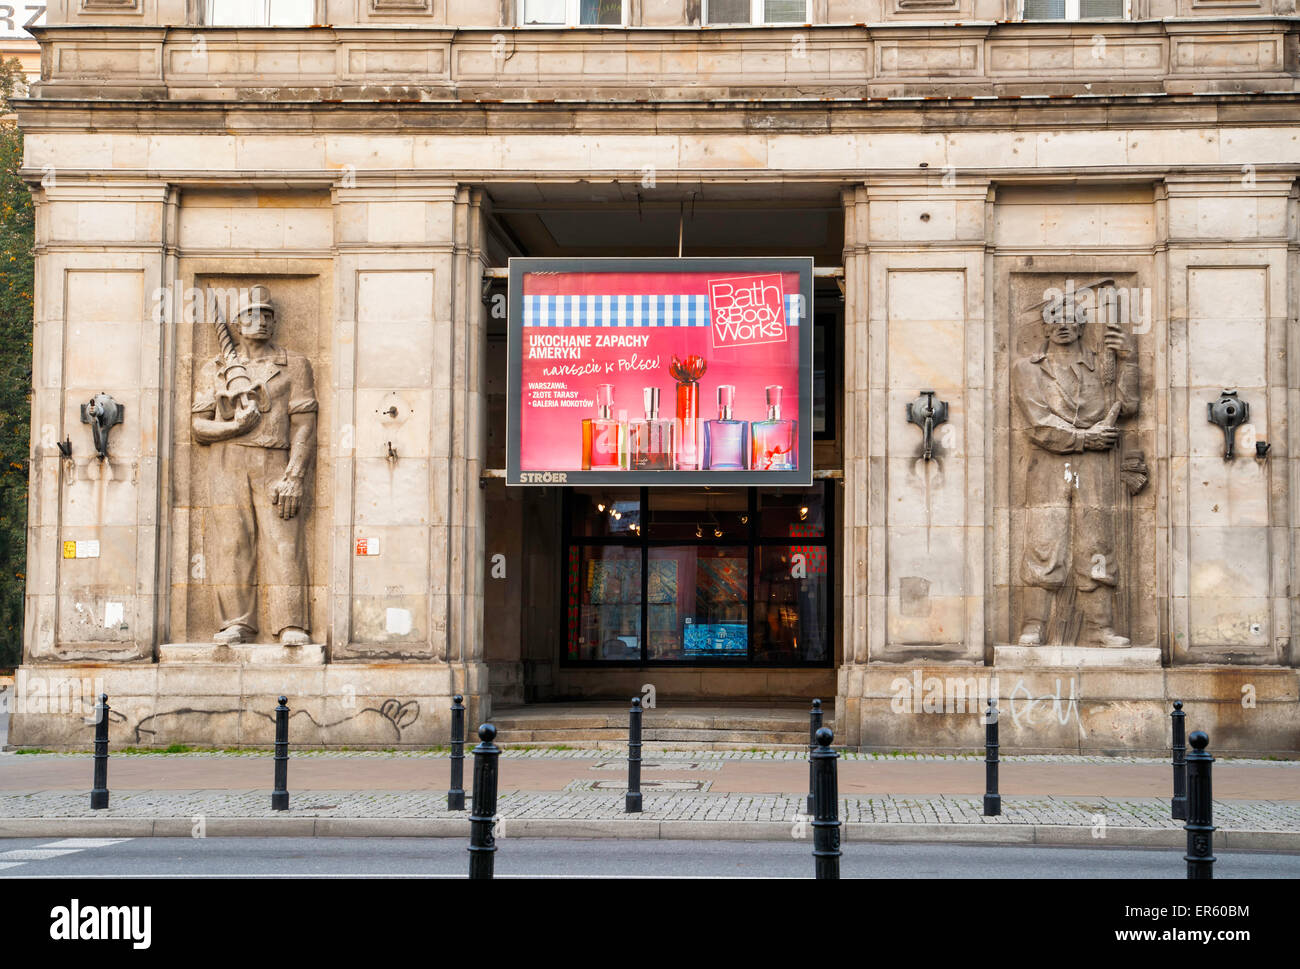 La juxtaposition d'un vieux bâtiment communiste avec les travailleurs musclés décorant la façade contemporaine et un Bain et corps sign Banque D'Images